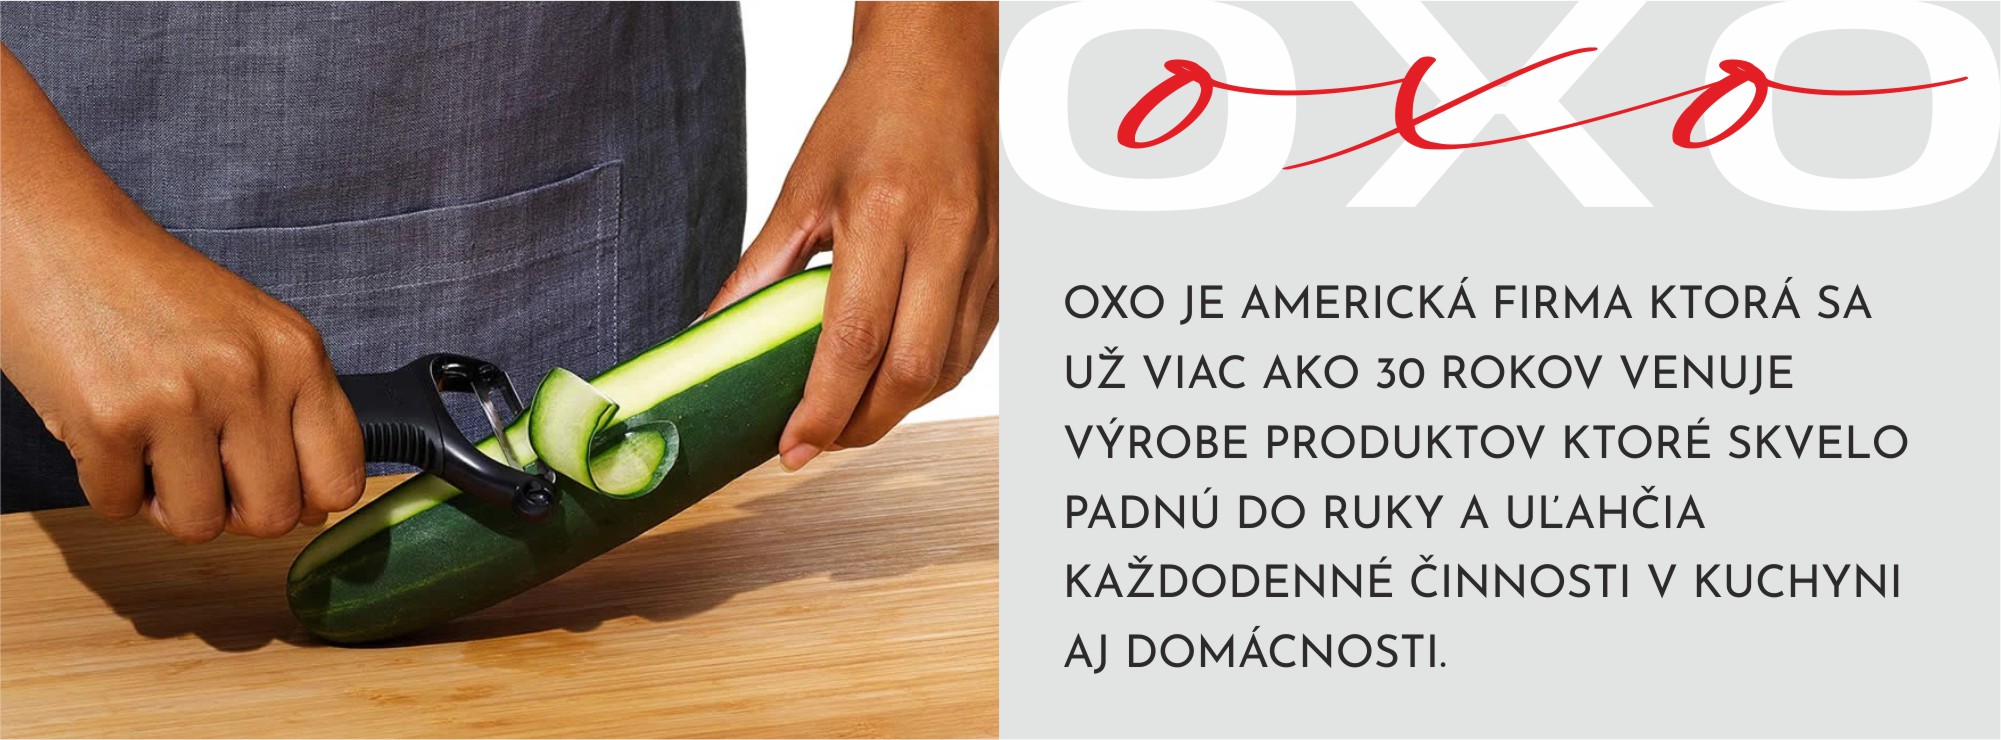 OXO-info-škrabkaY